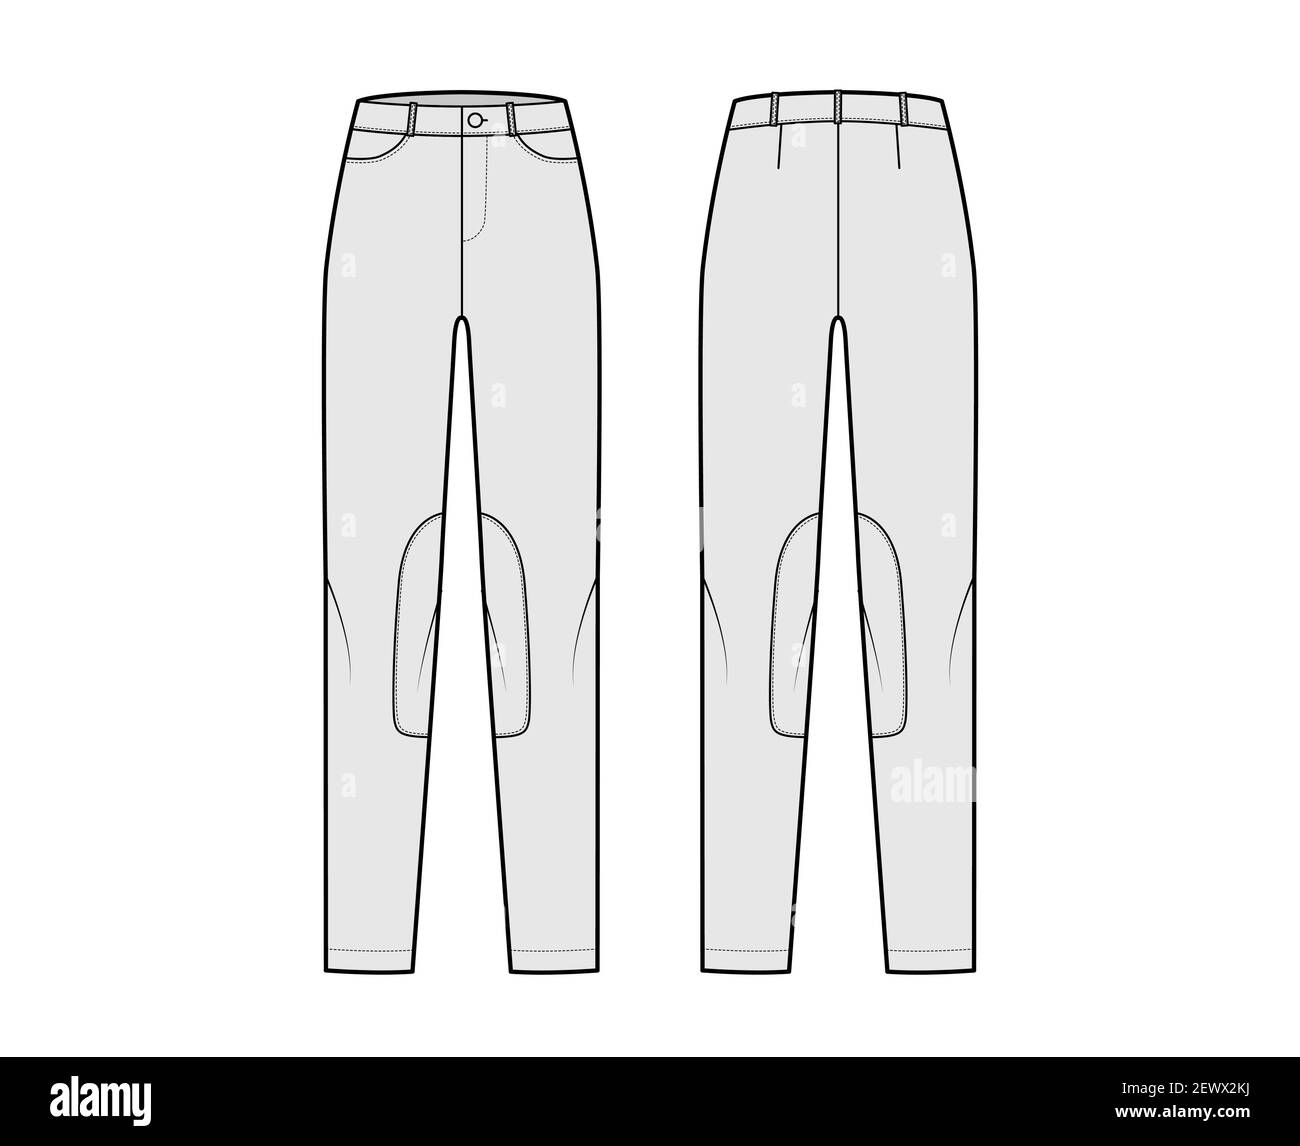 Ensemble de jeans Kentucky Jodhpurs pantalons denim illustration technique de la mode avec taille basse, taille, poches, passants de ceinture. Modèle de vêtement à fond plat à l'avant du dos, de couleur grise. Femmes, hommes, maquette de CAD unisex Illustration de Vecteur